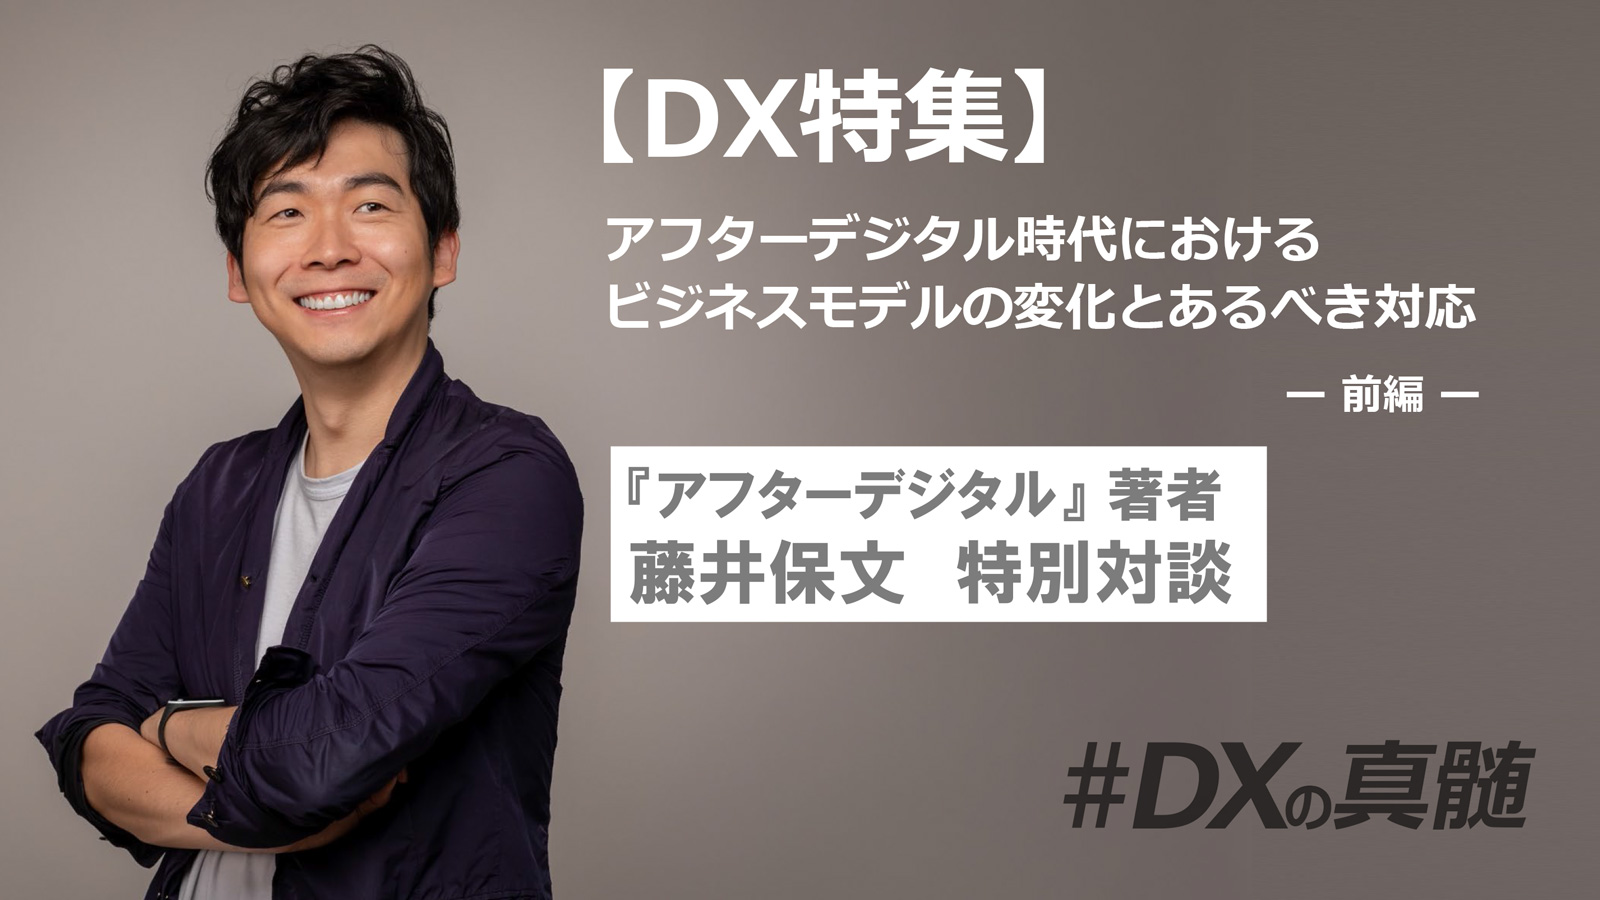 【DX特別対談】アフターデジタル時代におけるビジネスモデルの変化とあるべき対応(前編)